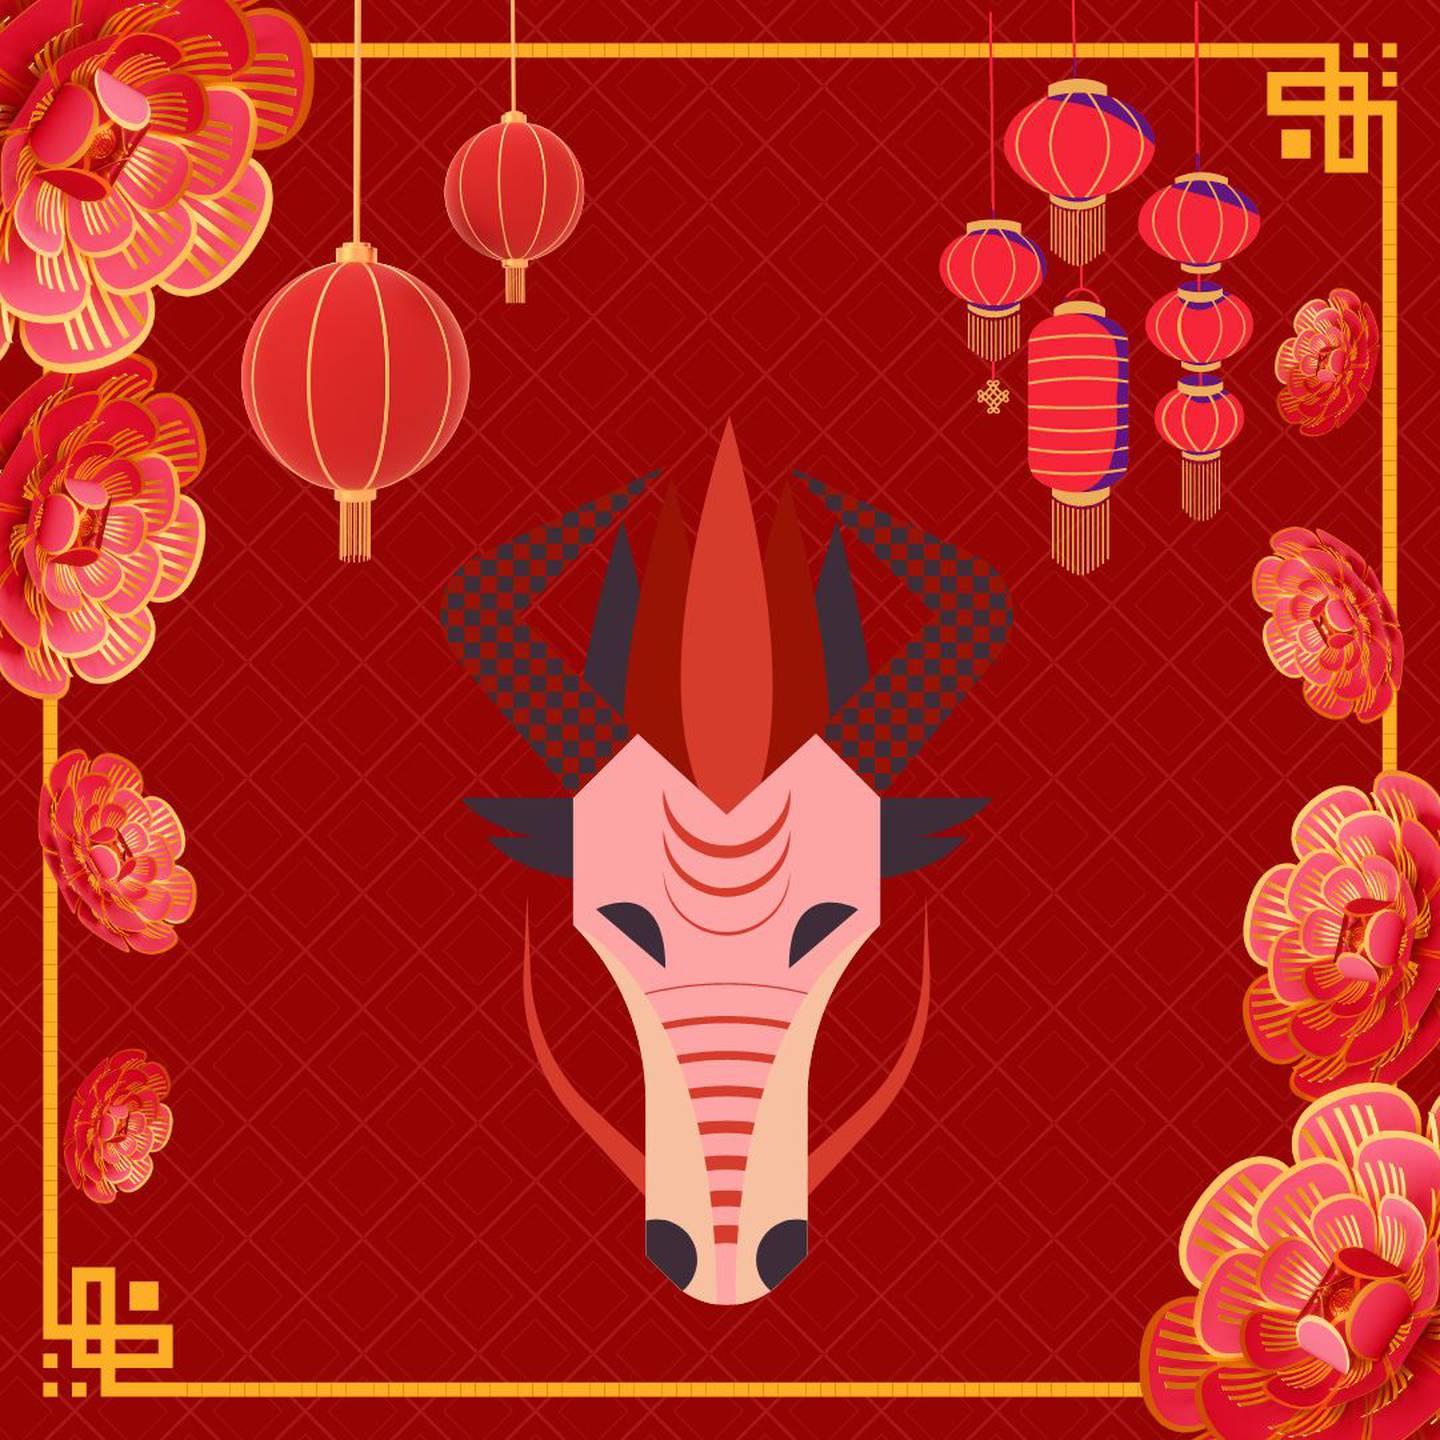 Caricatura de la cabeza de un dragón sobre un fondo rojo con motivos decorativos orientales